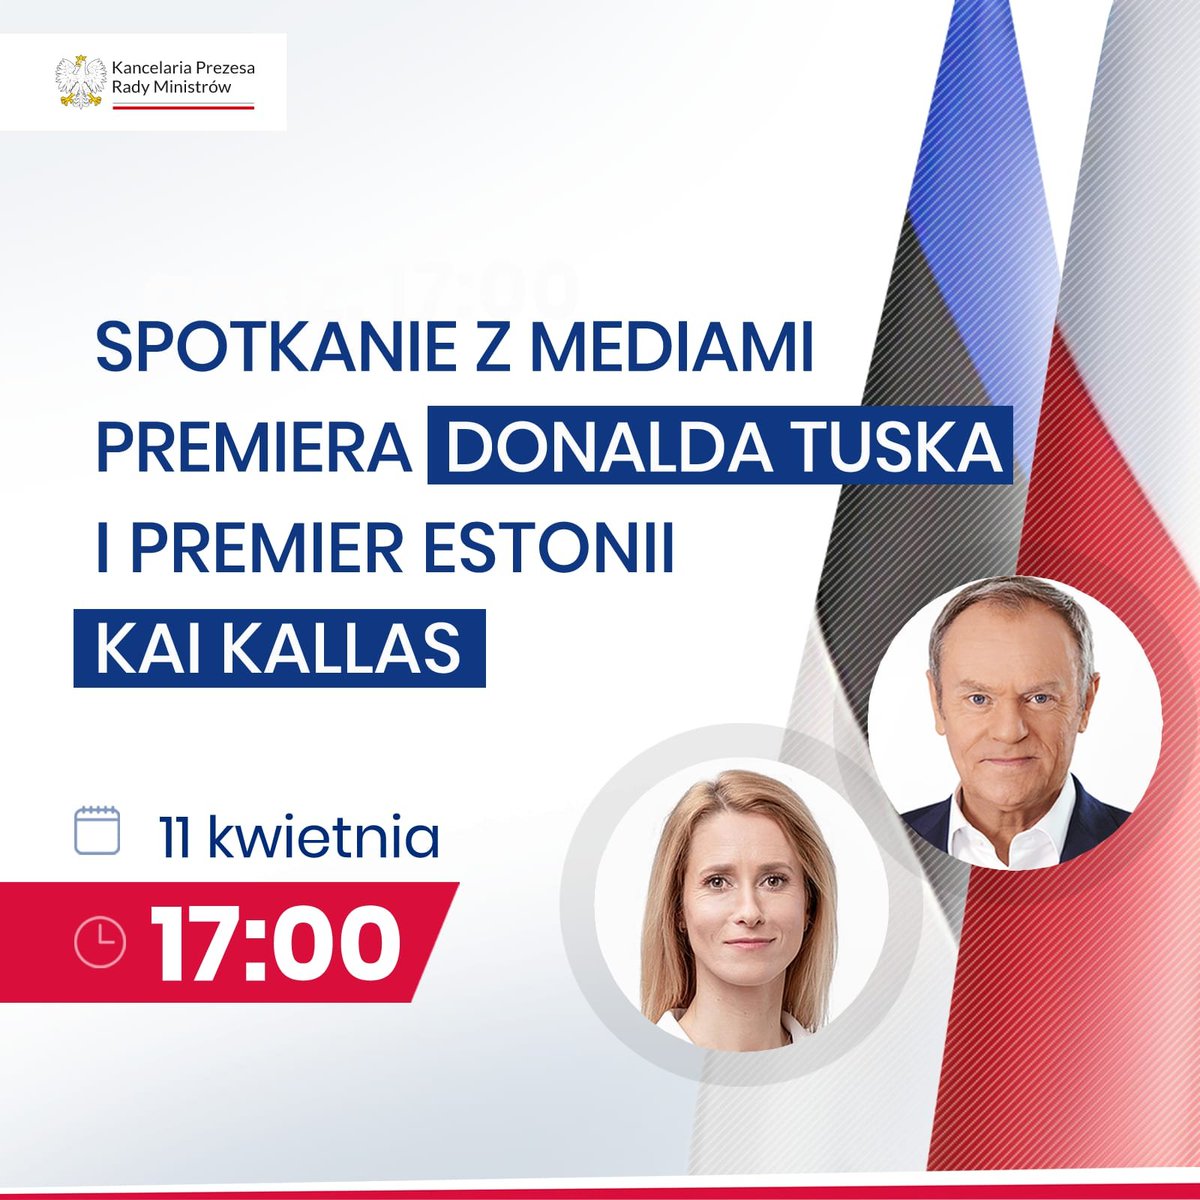 📢 ZAPOWIEDŹ | 11 kwietnia, o godz. 17.00 odbędzie się spotkanie z mediami Premiera @DonaldTusk i Premier Estonii @kajakallas. 📍 #KPRM